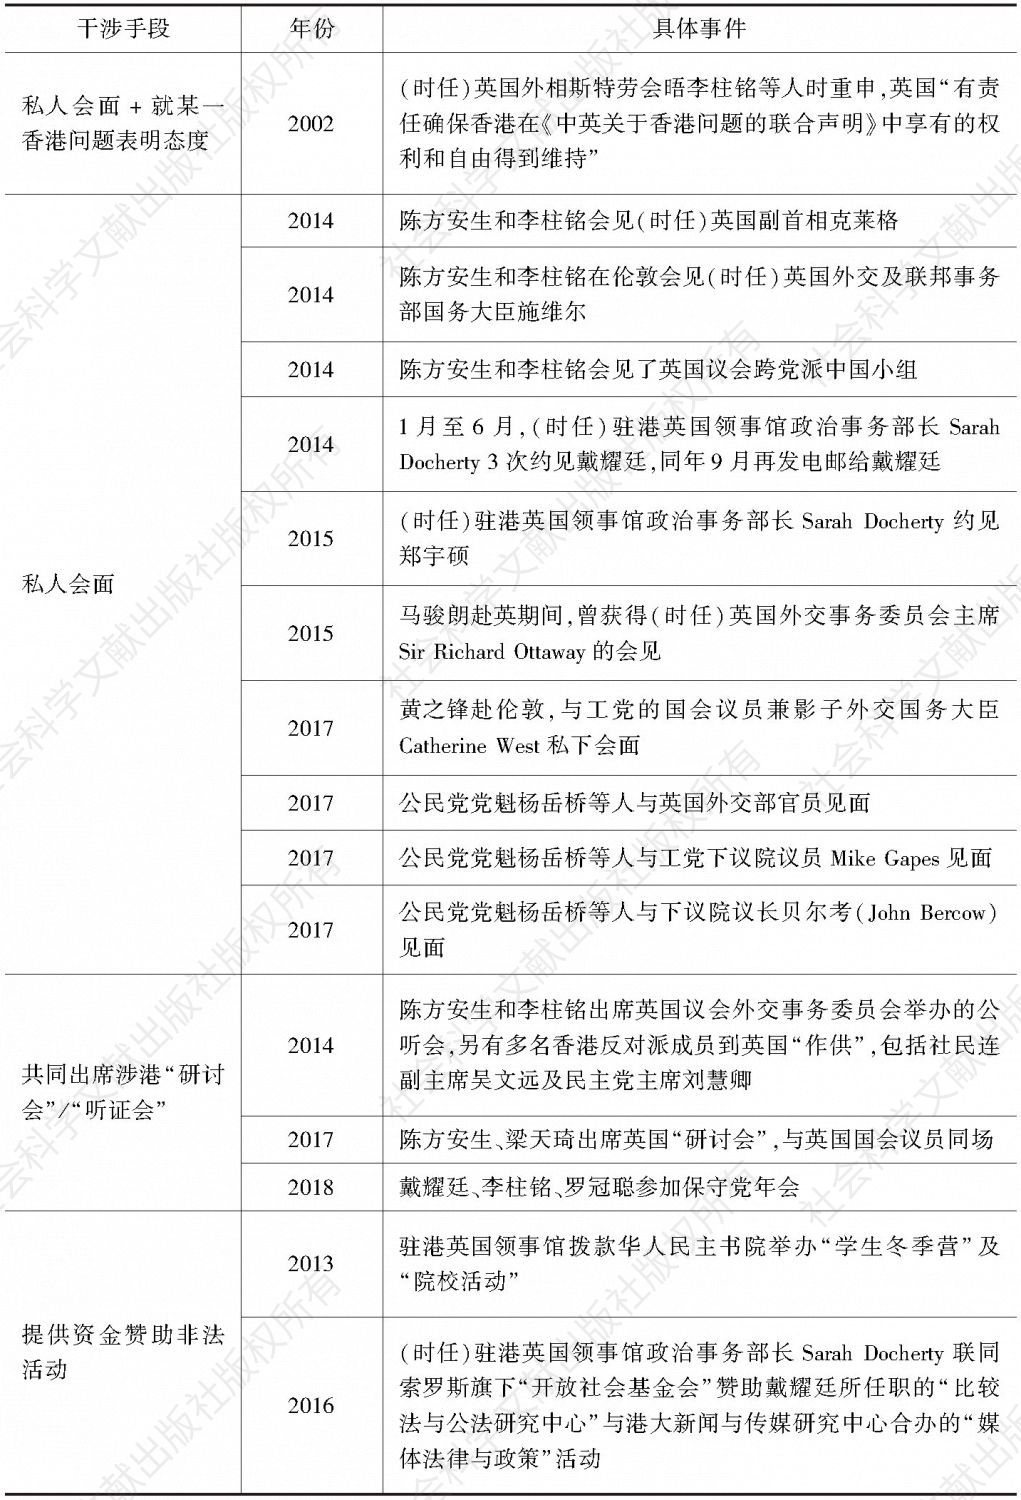 附表5 1997～2018年英国干涉香港事务的重要事件